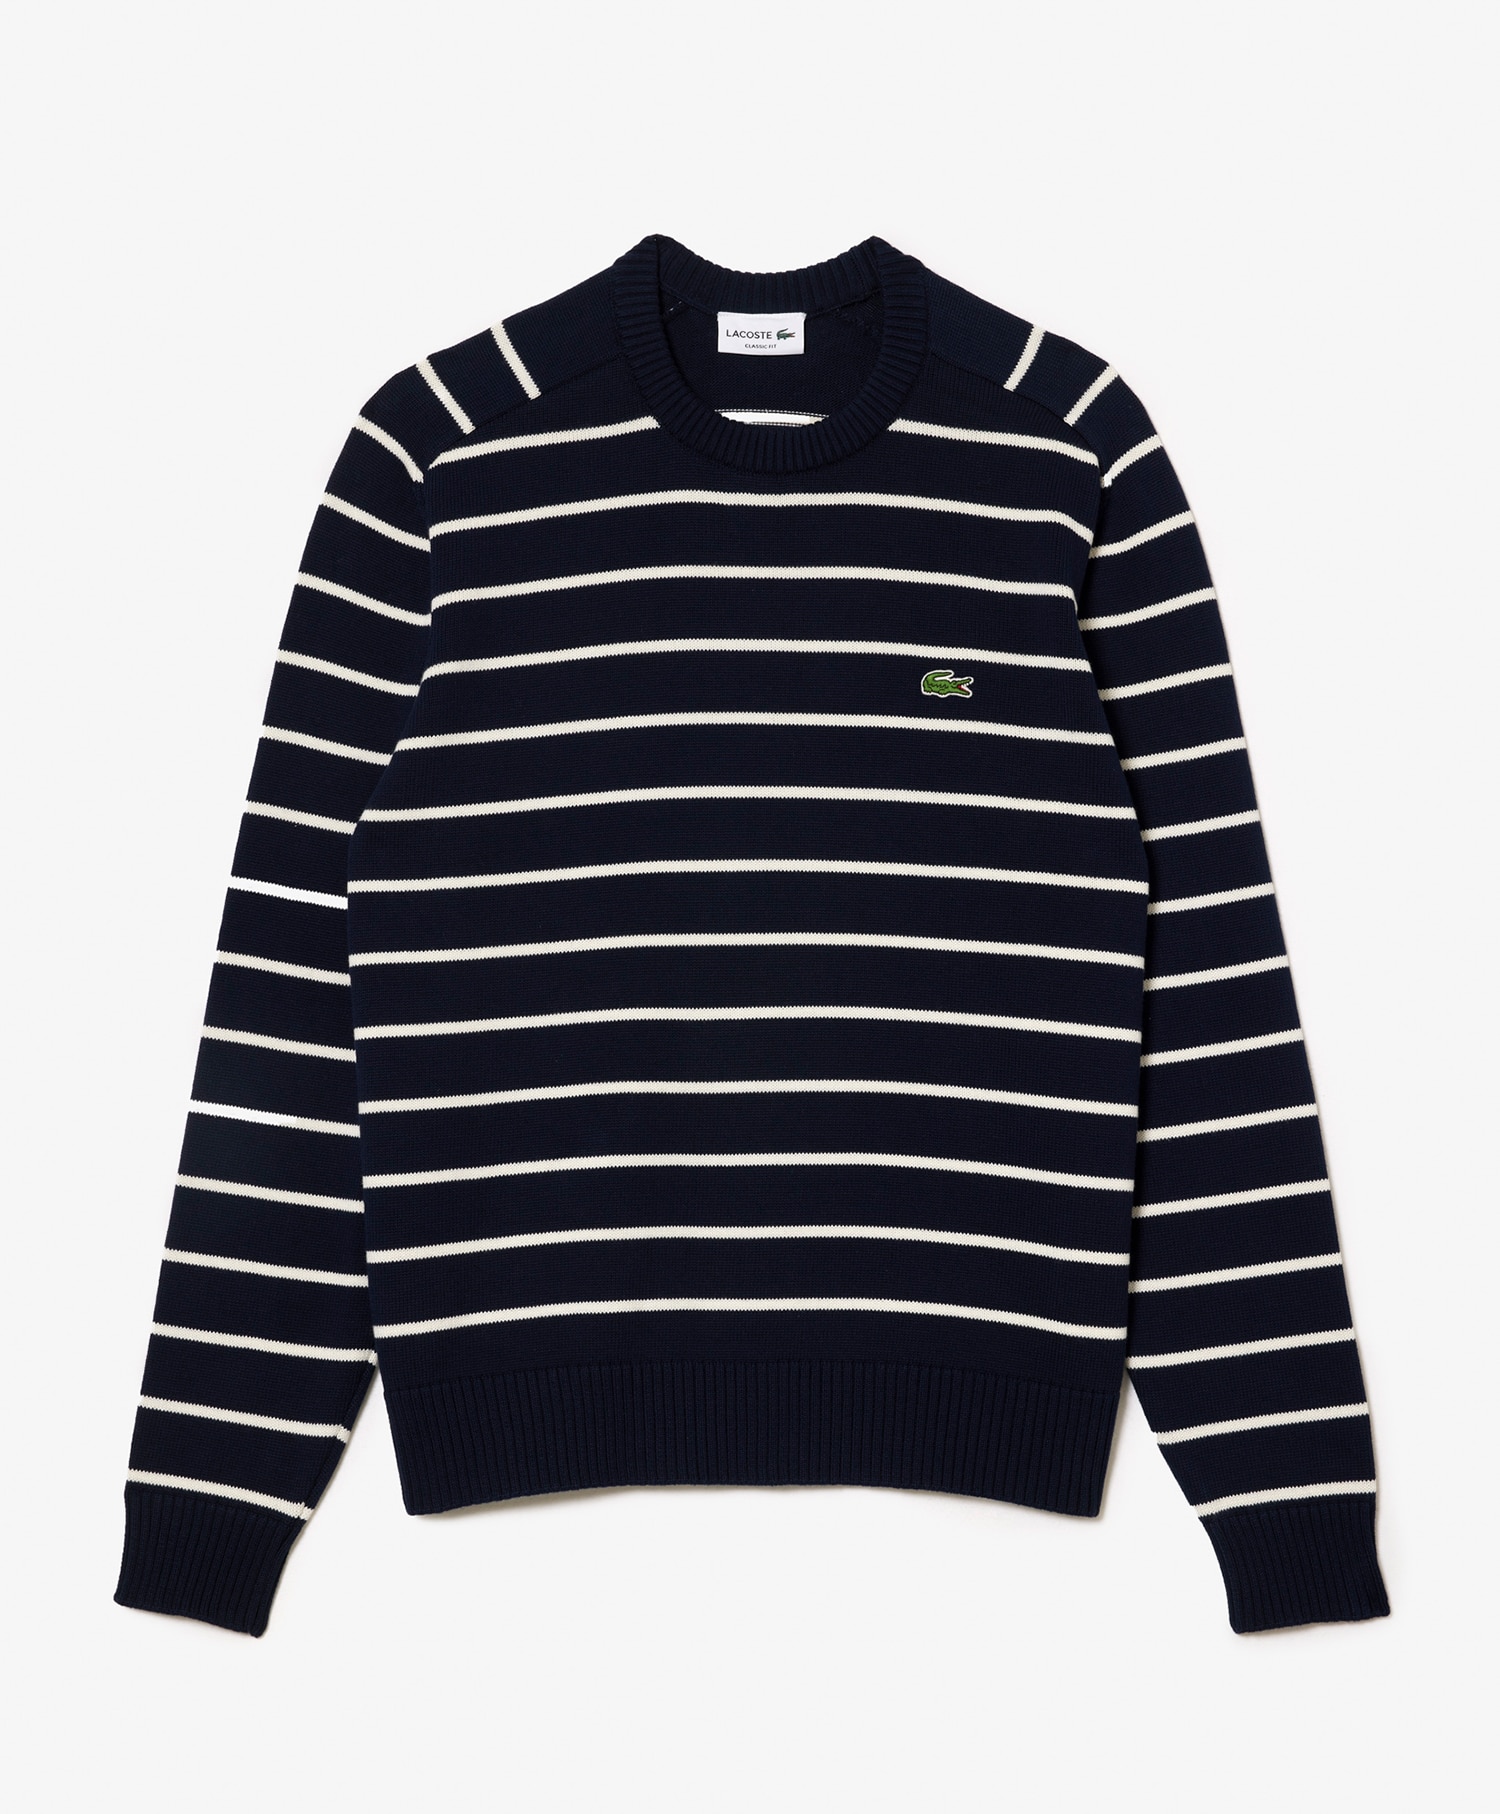 Lacoste Men's Striped Sweater